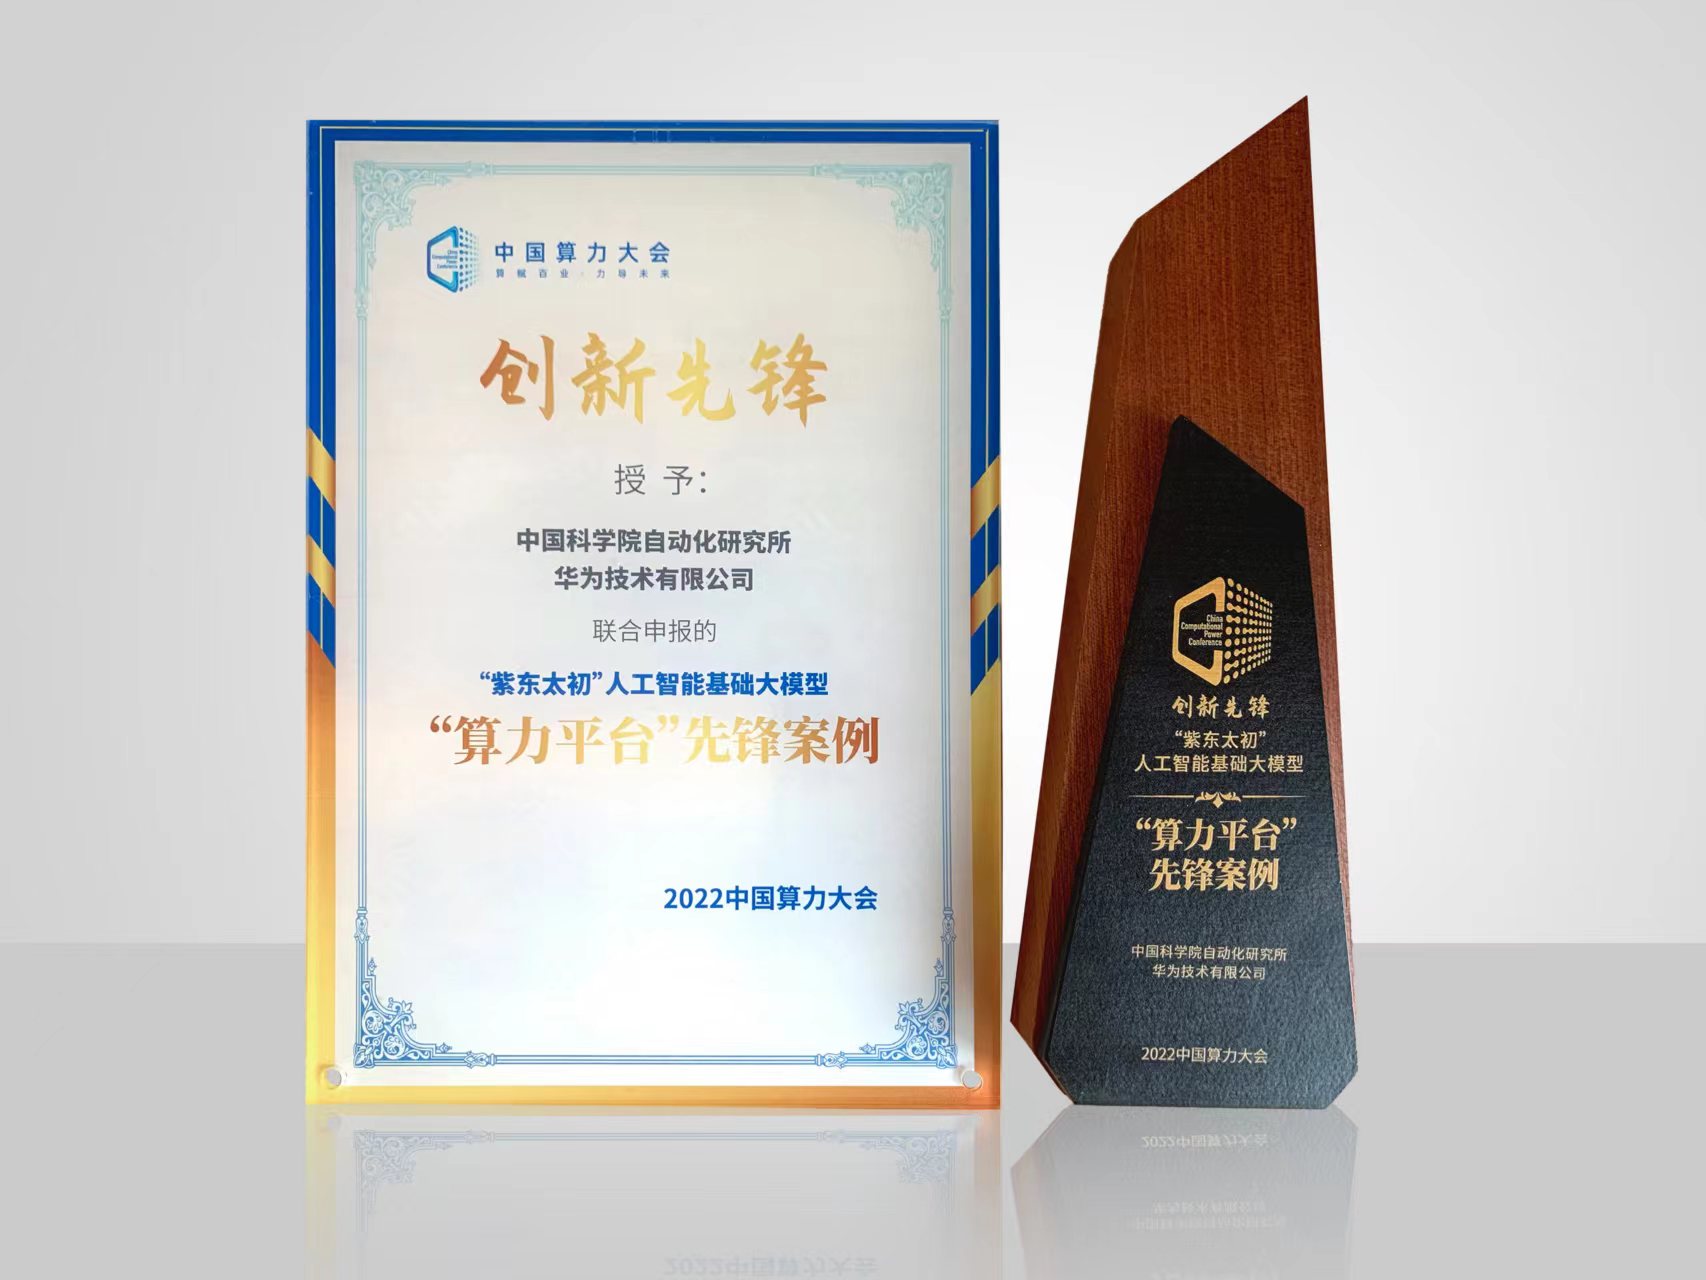 基于昇腾AI的“紫东太初”大模型获中国算力大会大奖